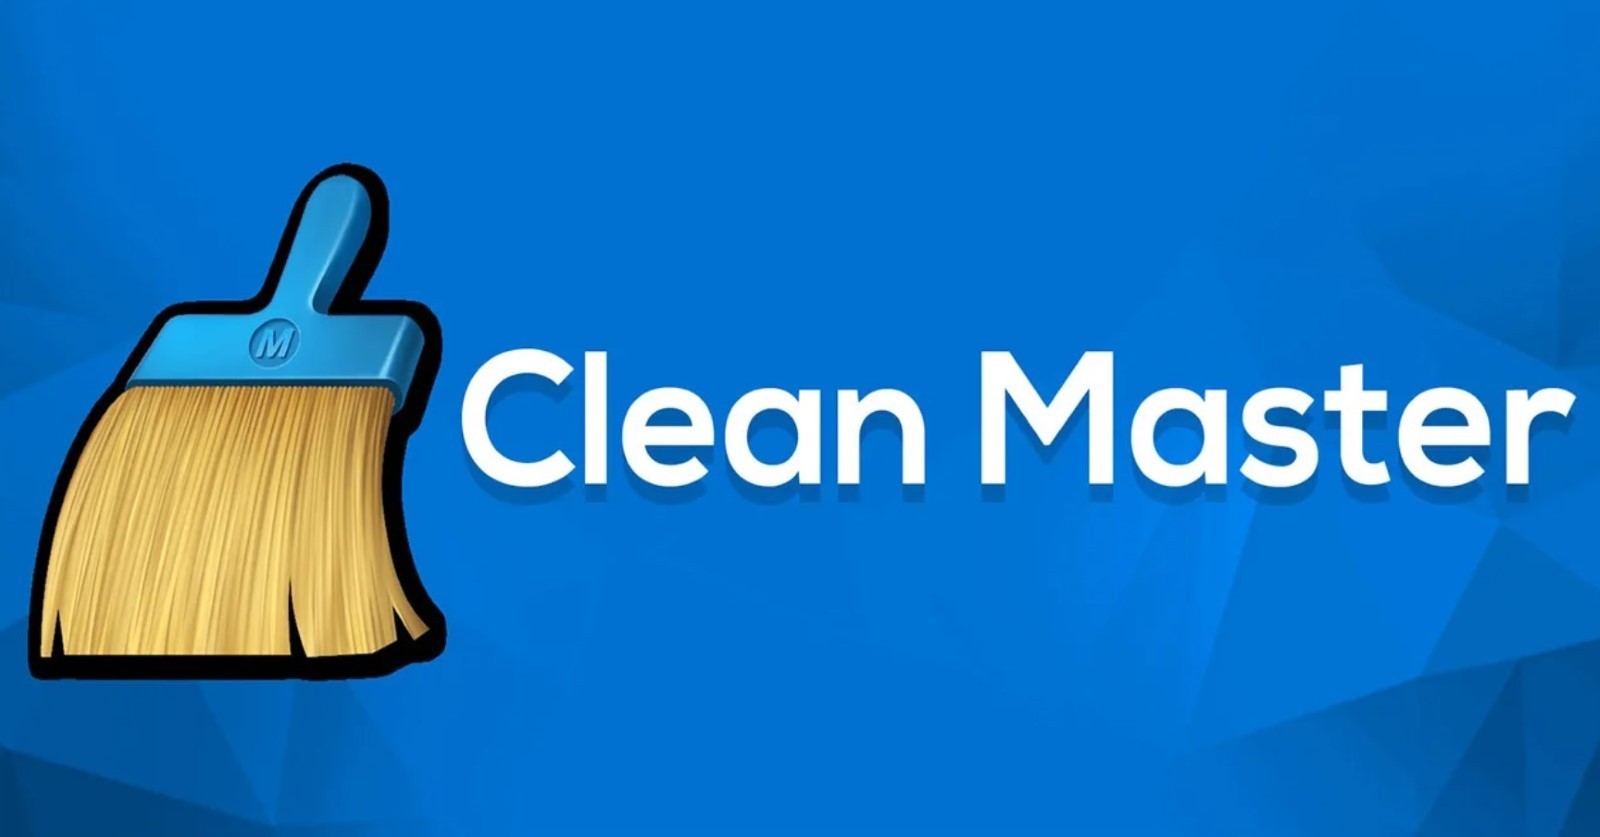 Клинмастер. Клин мастер. Мастер очистки. Clean Master Android. Clean Master иконка.